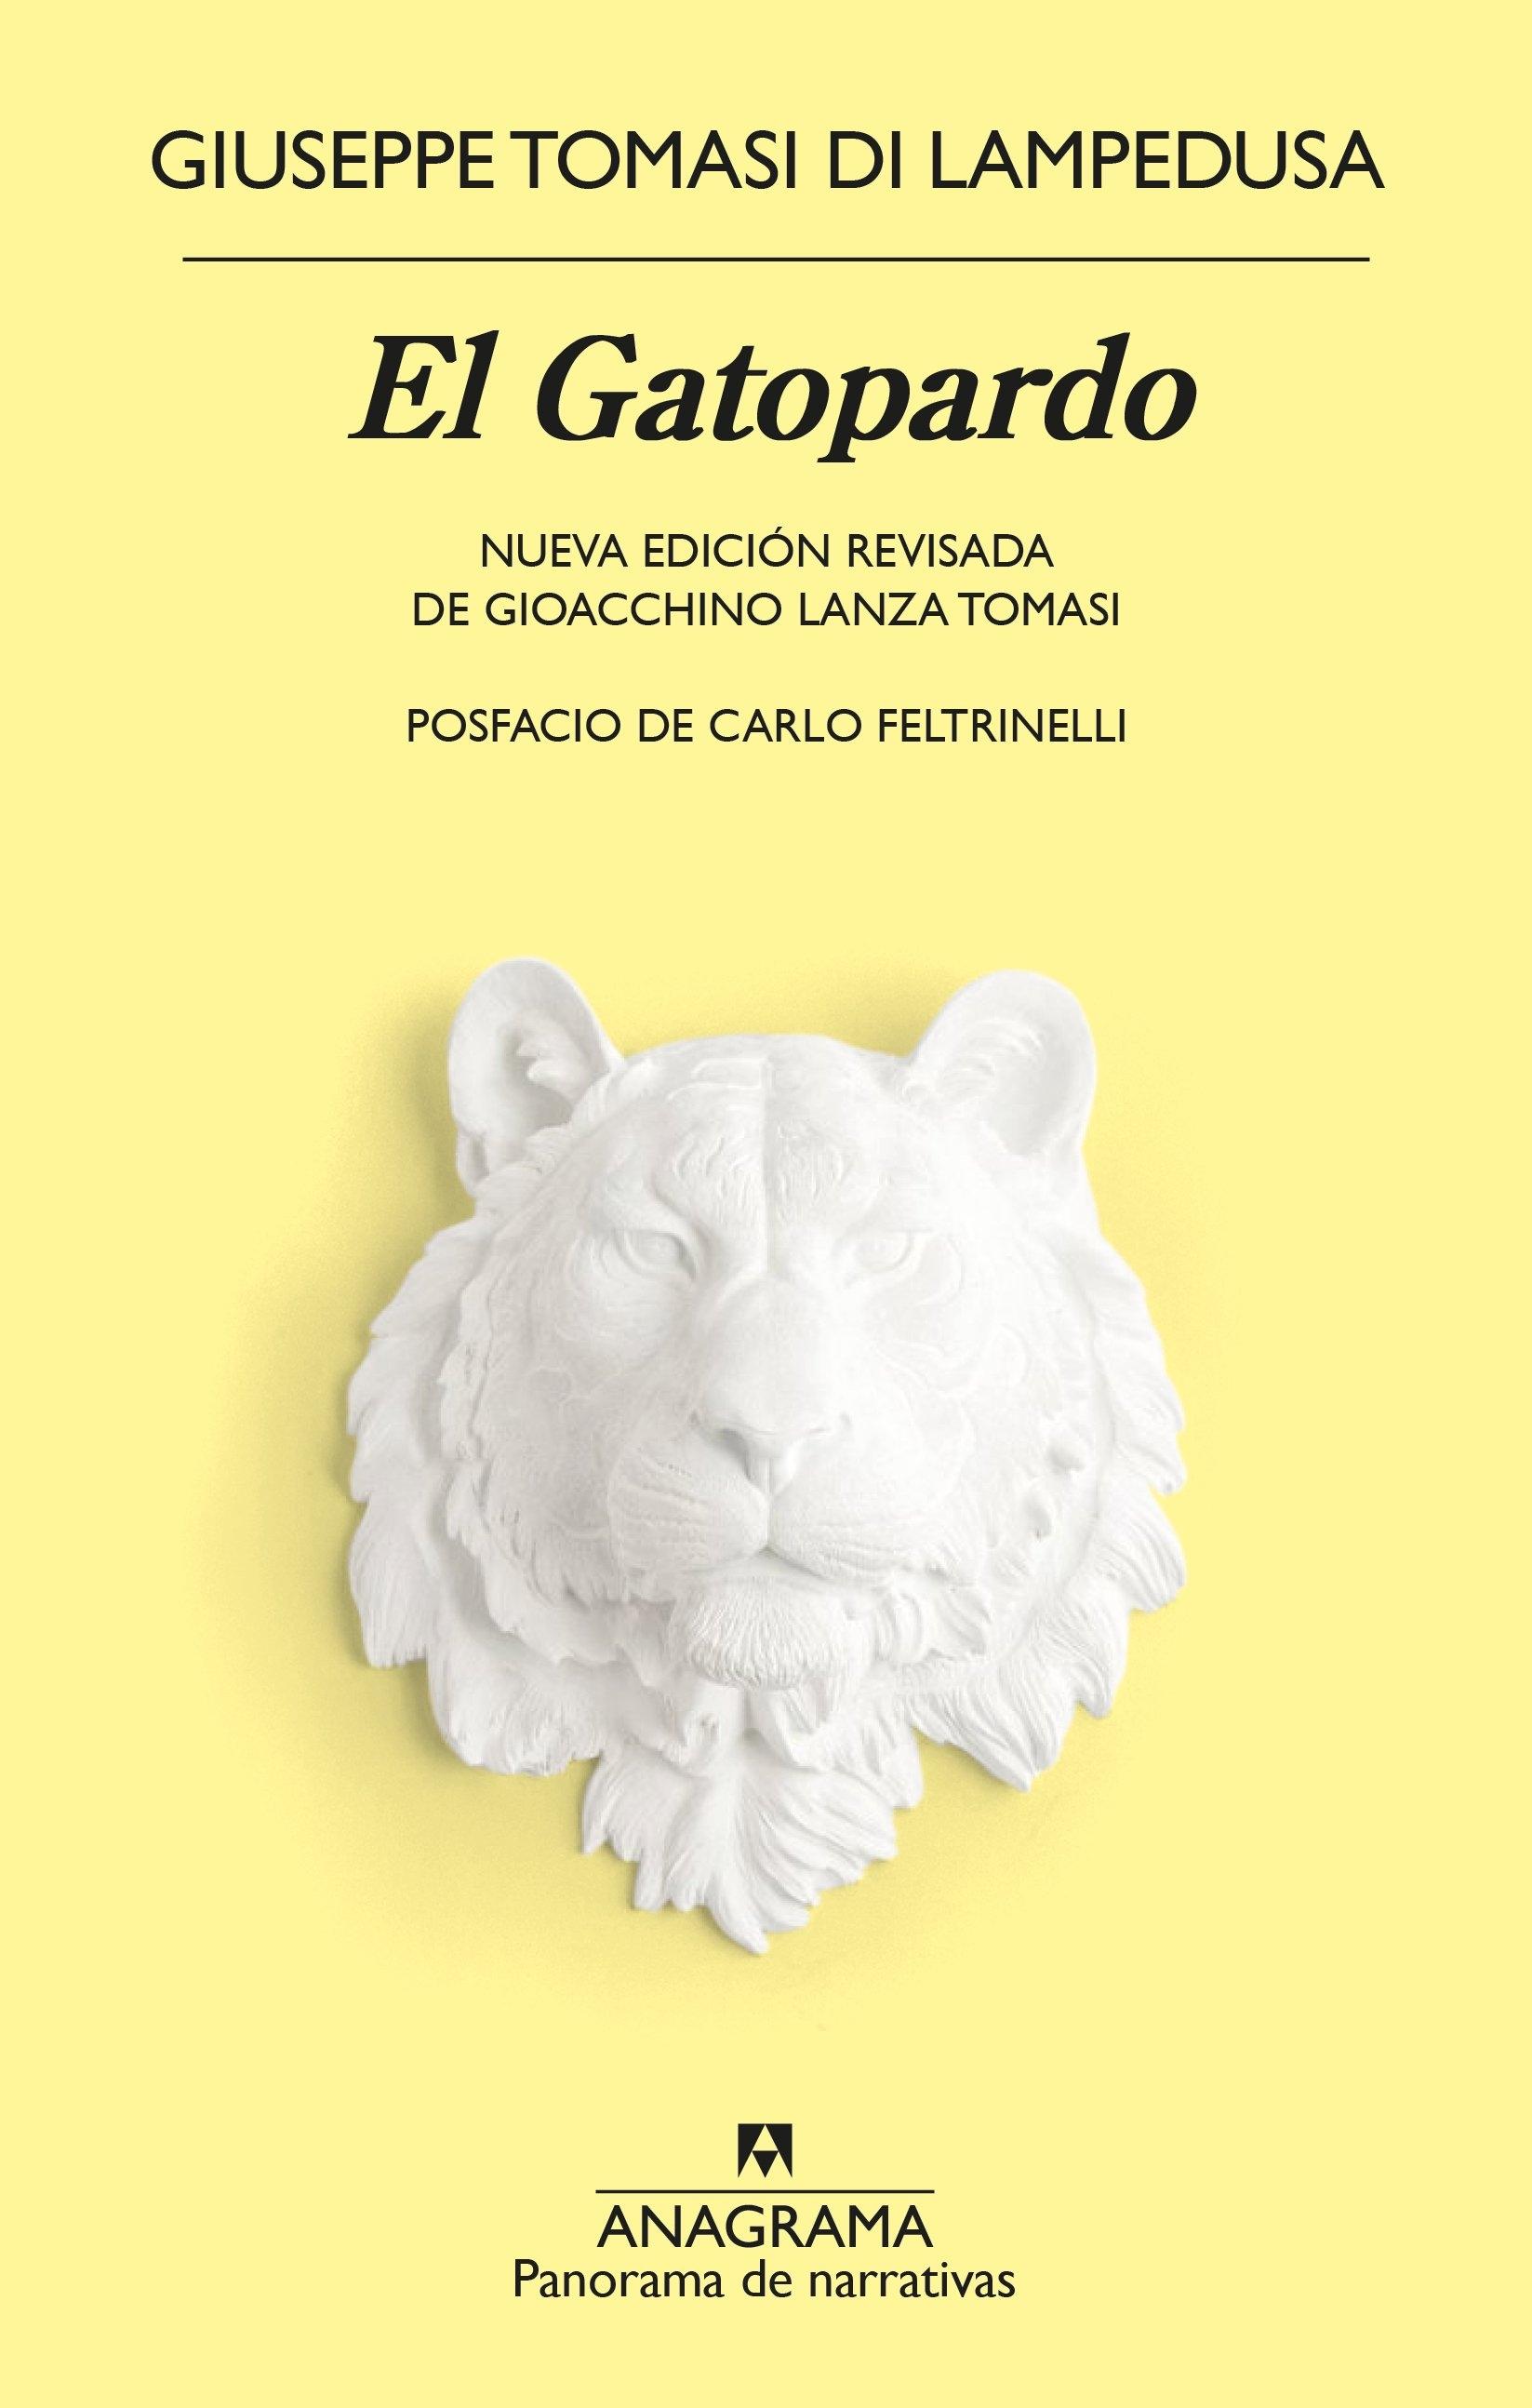 El Gatopardo "Nueva Edición Revisada de Gioacchino Lanza Tomasi. Posfacio de Carlo Feltrinelli"